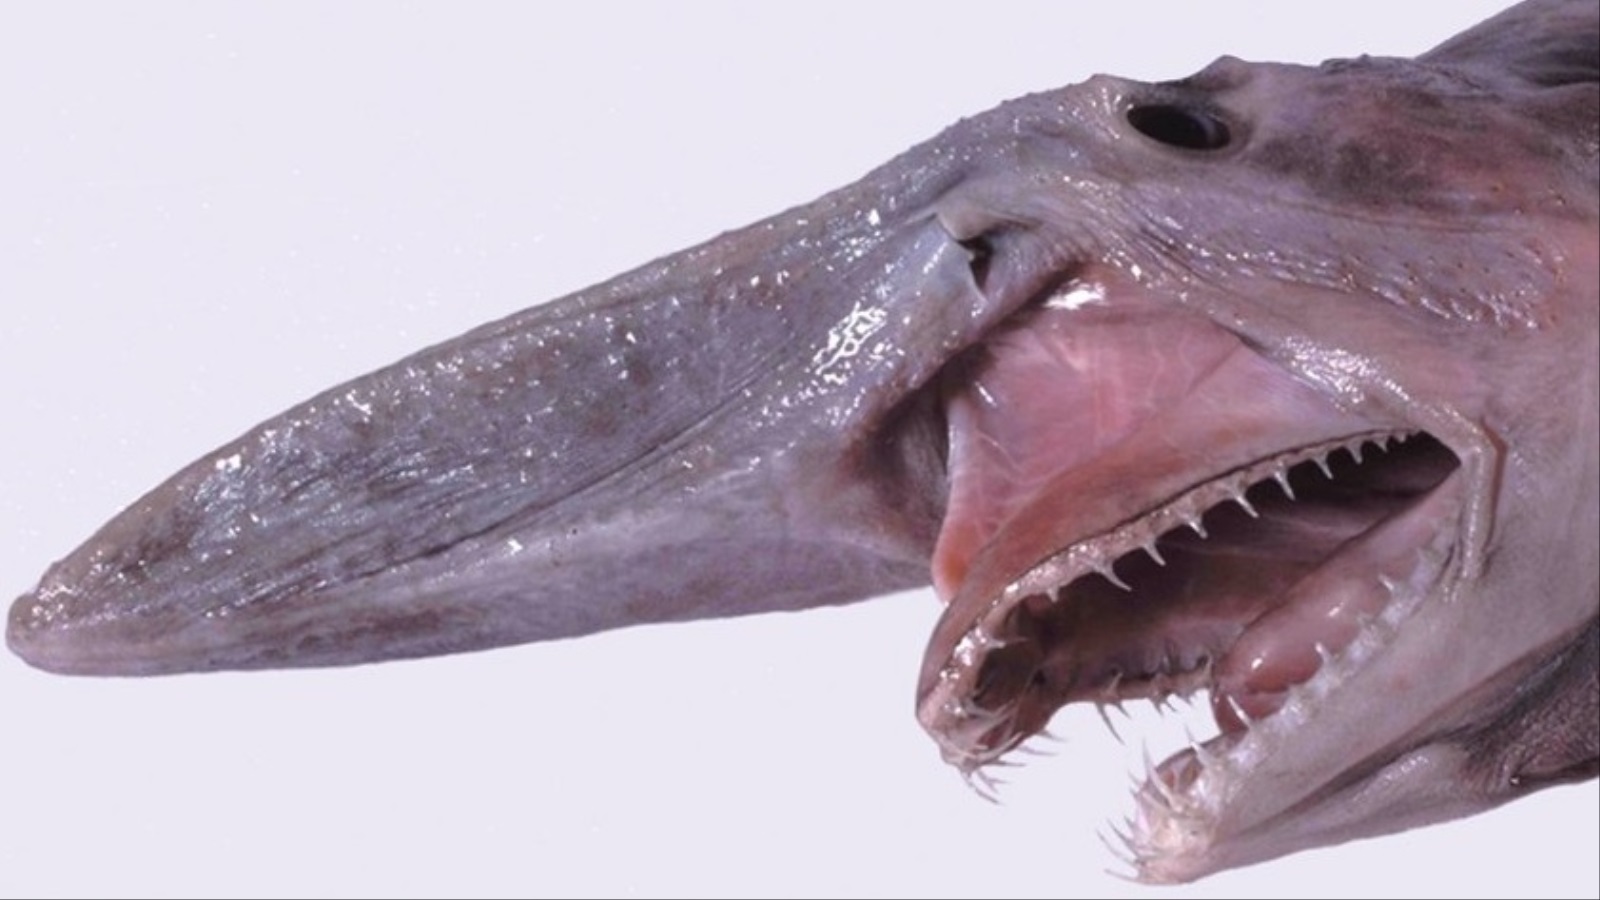 ‪أسماك القرش العفنة معروفة بفكوكها المليئة‬ أسماك القرش العفنة معروفة بفكوكها المليئة بالأسنان الشبيهة بالأظافر (متحف فكتوريا)